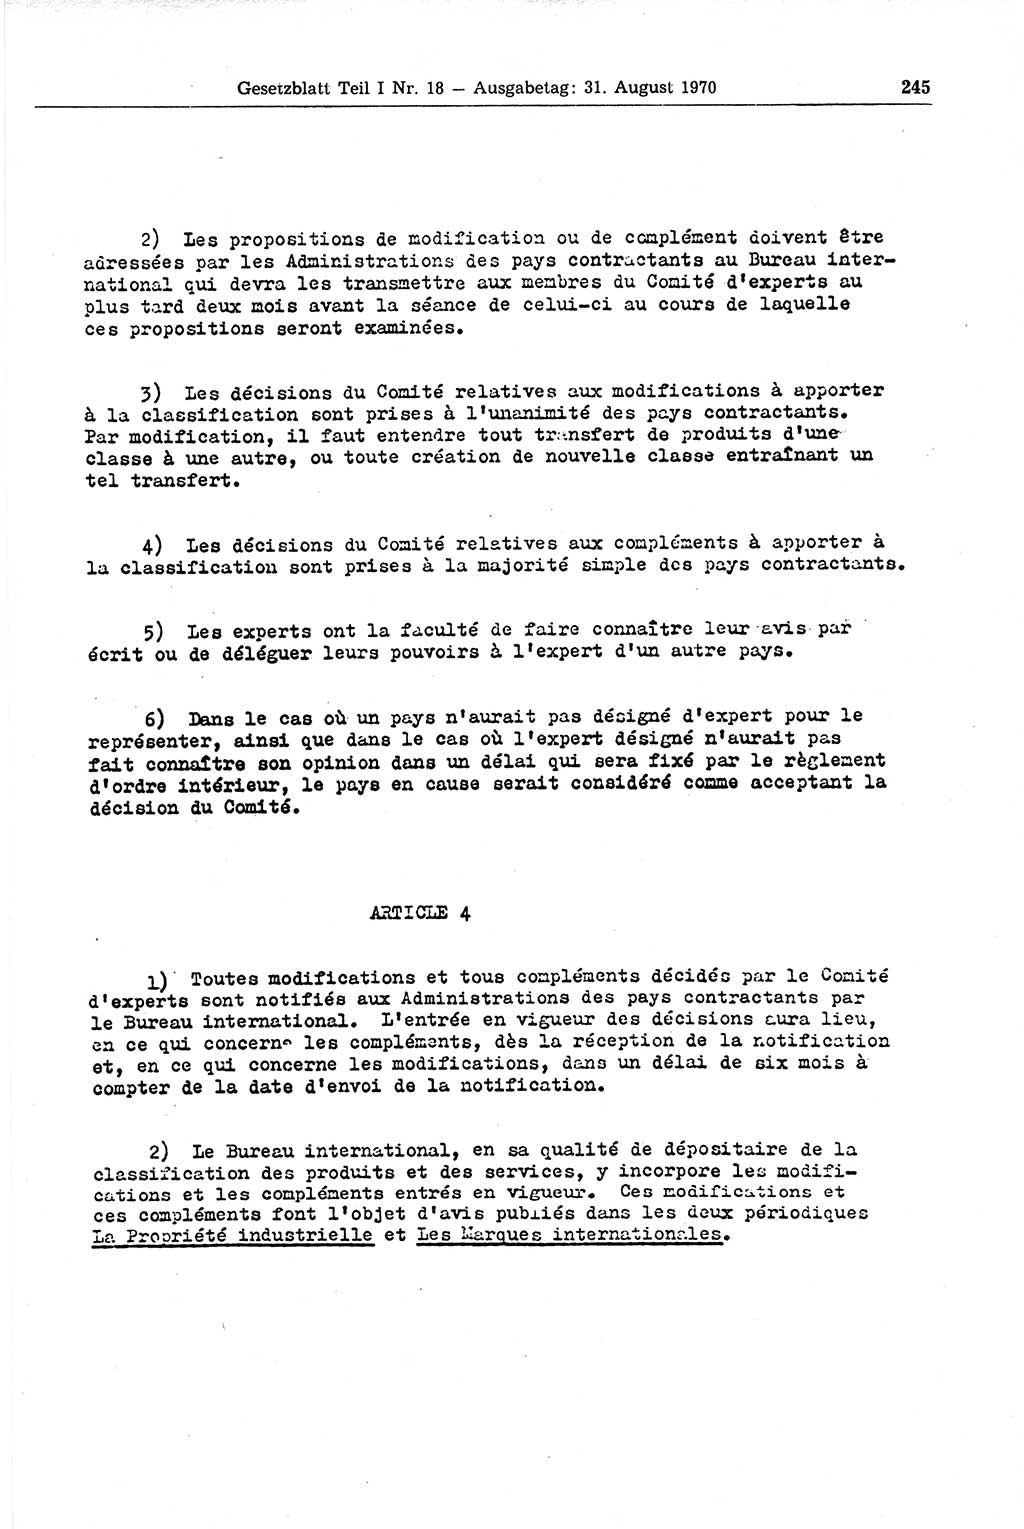 Gesetzblatt (GBl.) der Deutschen Demokratischen Republik (DDR) Teil Ⅰ 1970, Seite 245 (GBl. DDR Ⅰ 1970, S. 245)